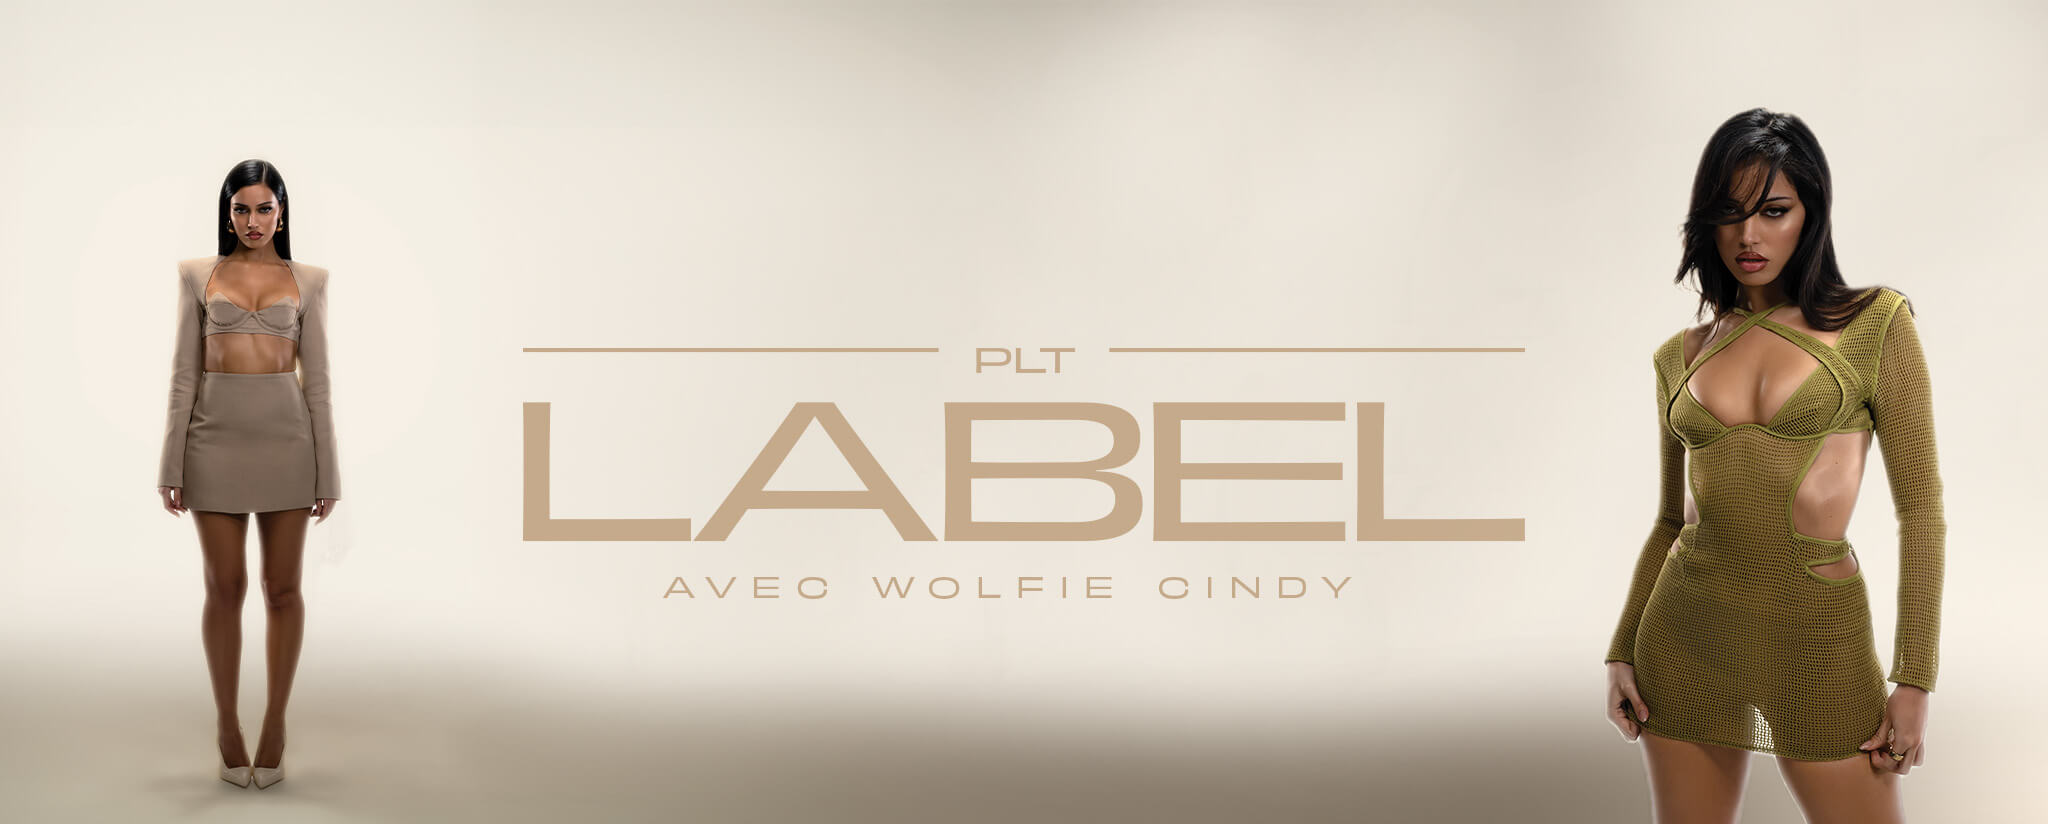 PLT Label Avec Wolfie Cindy